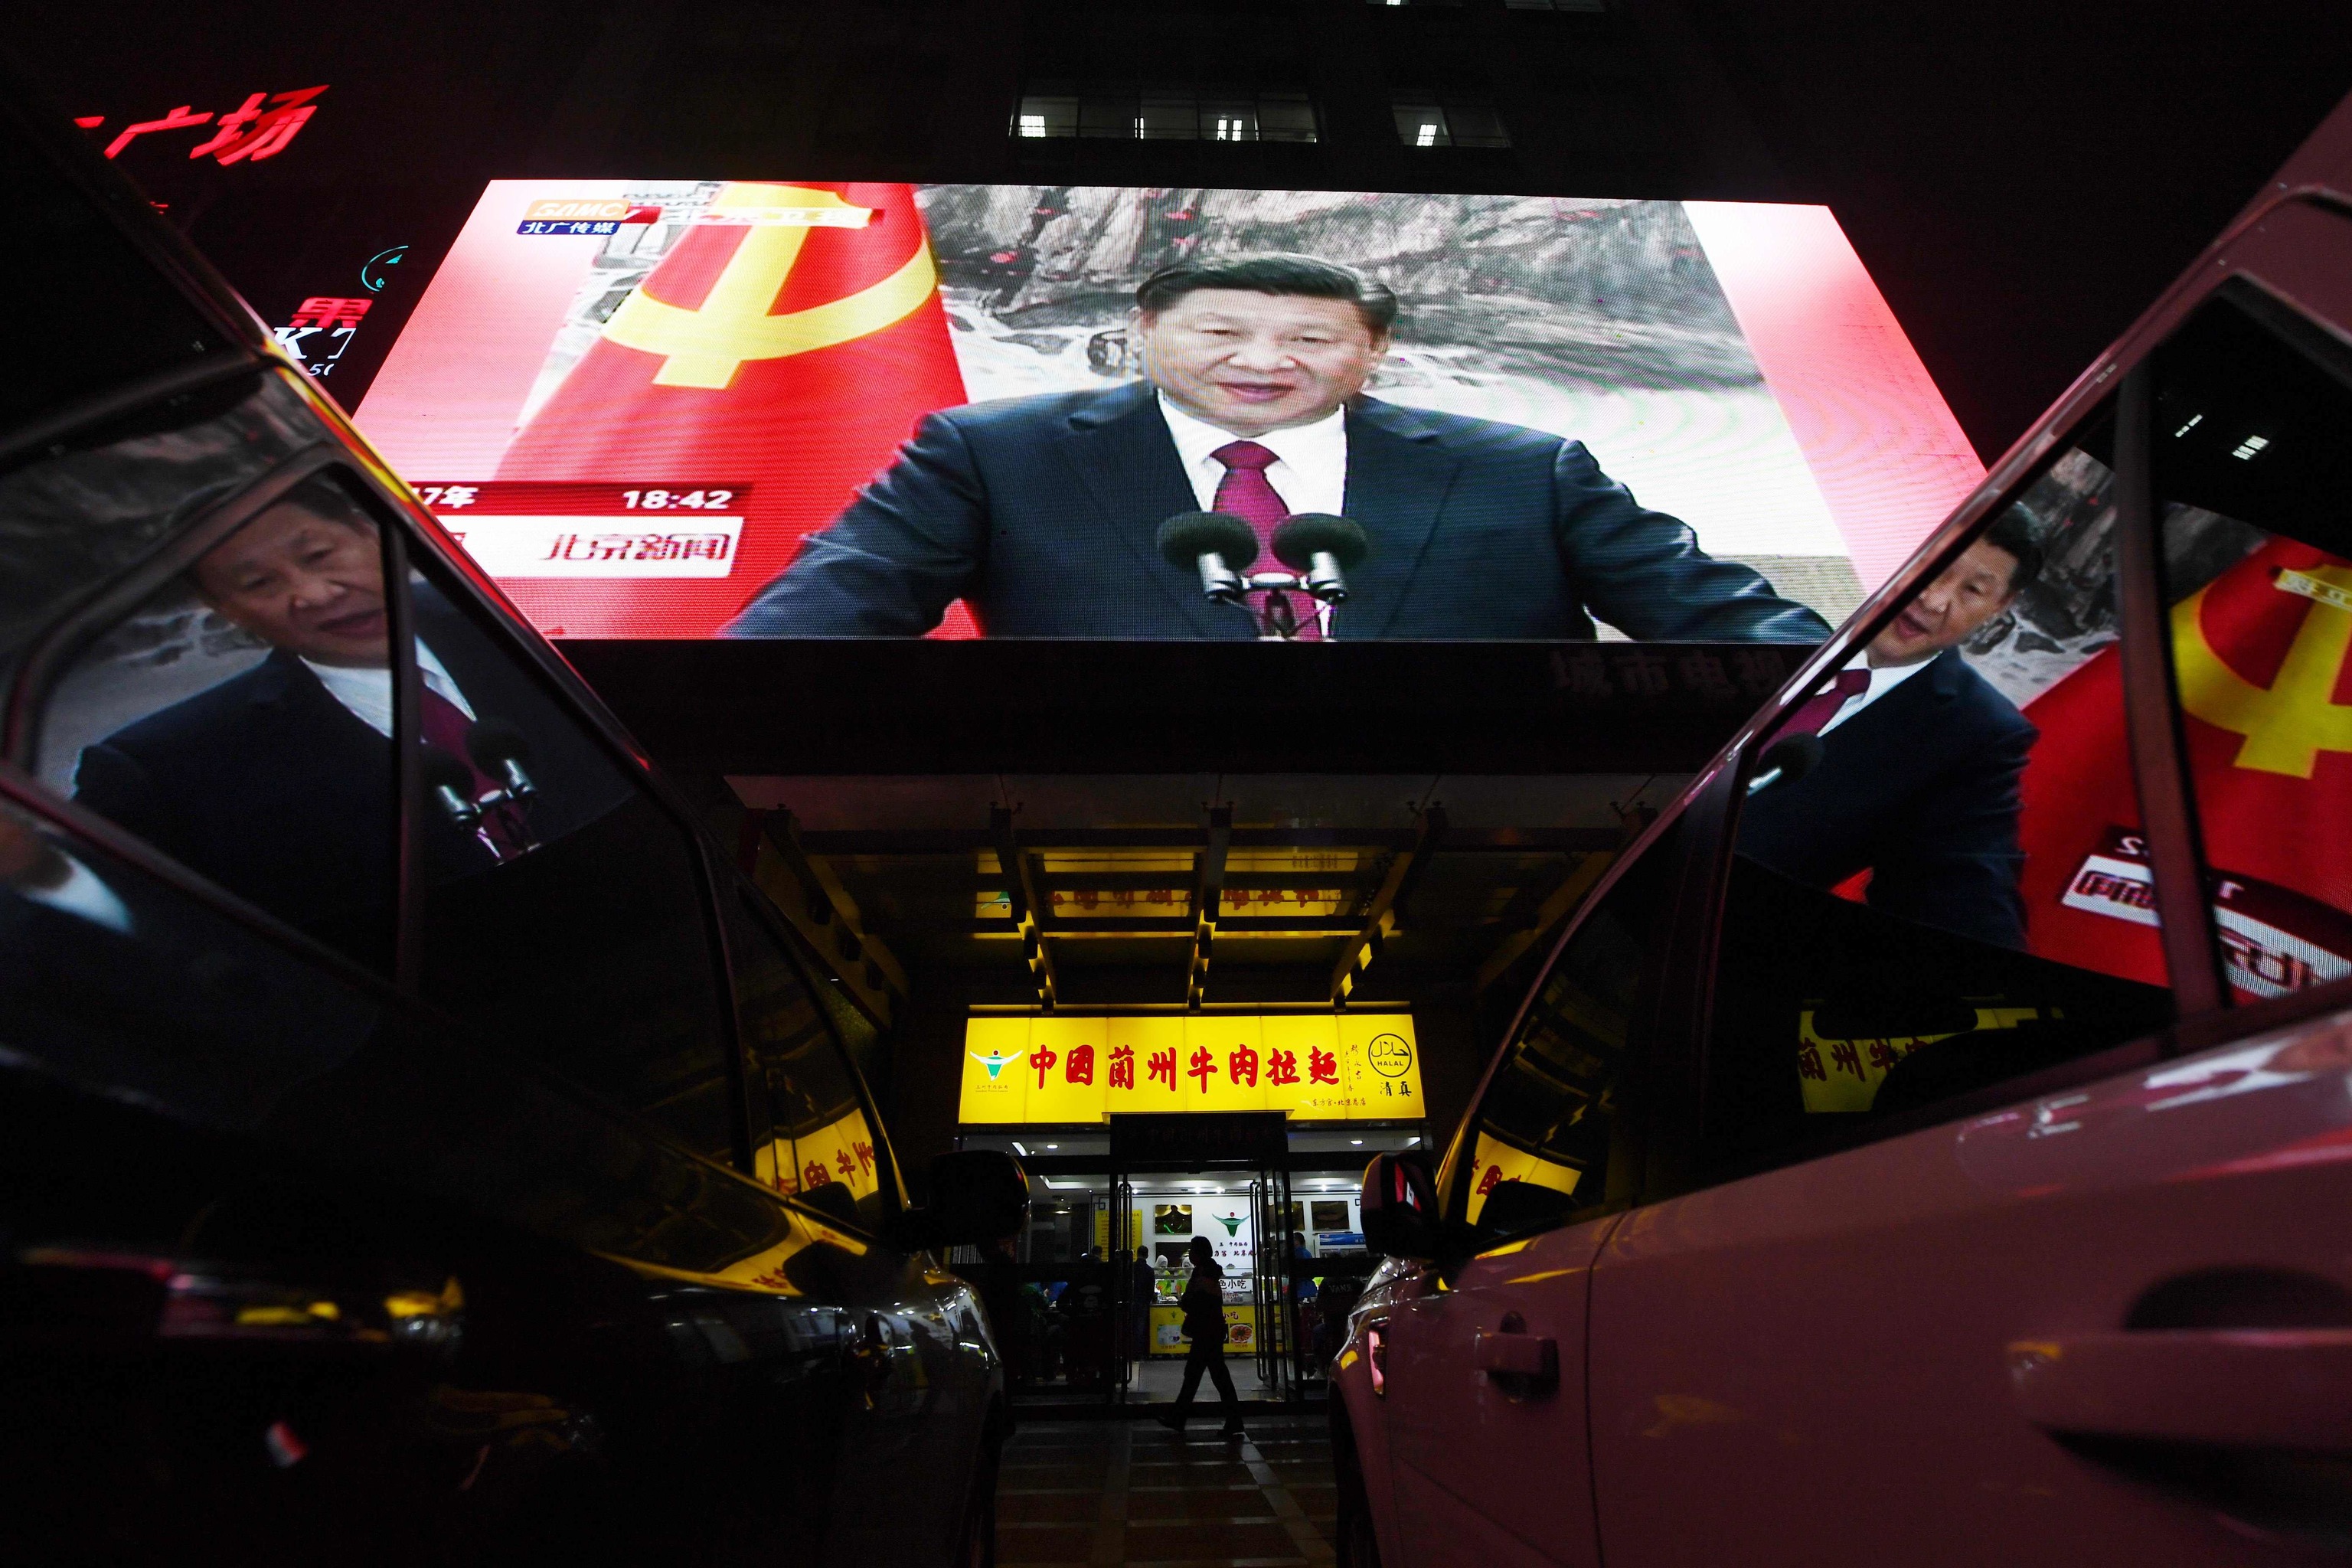 La guerra de Ucrania da alas al sueño expansivo de Xi Jinping